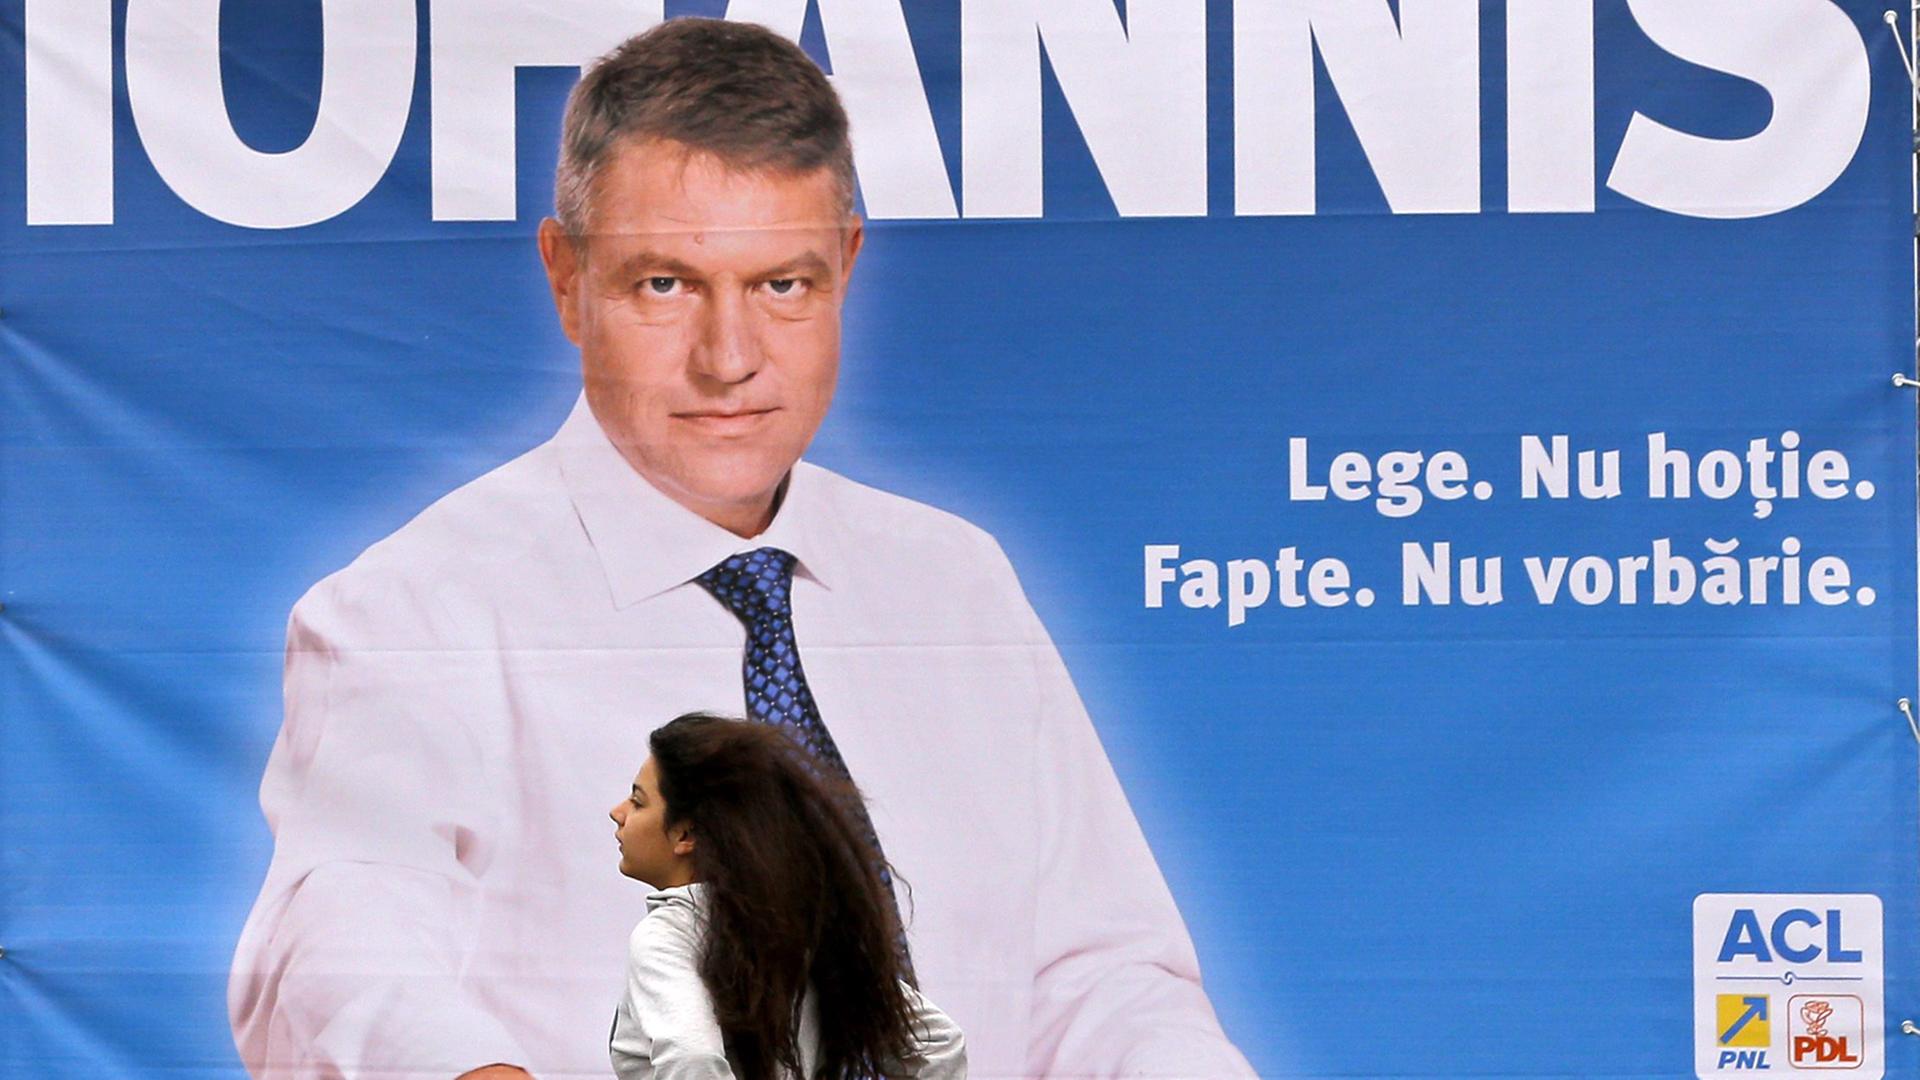 Eine Frau geht an einem Wahlplakat eines Kandidaten für die rumänische Präsientschaftswahl, Klaus Johannis, vorbei.